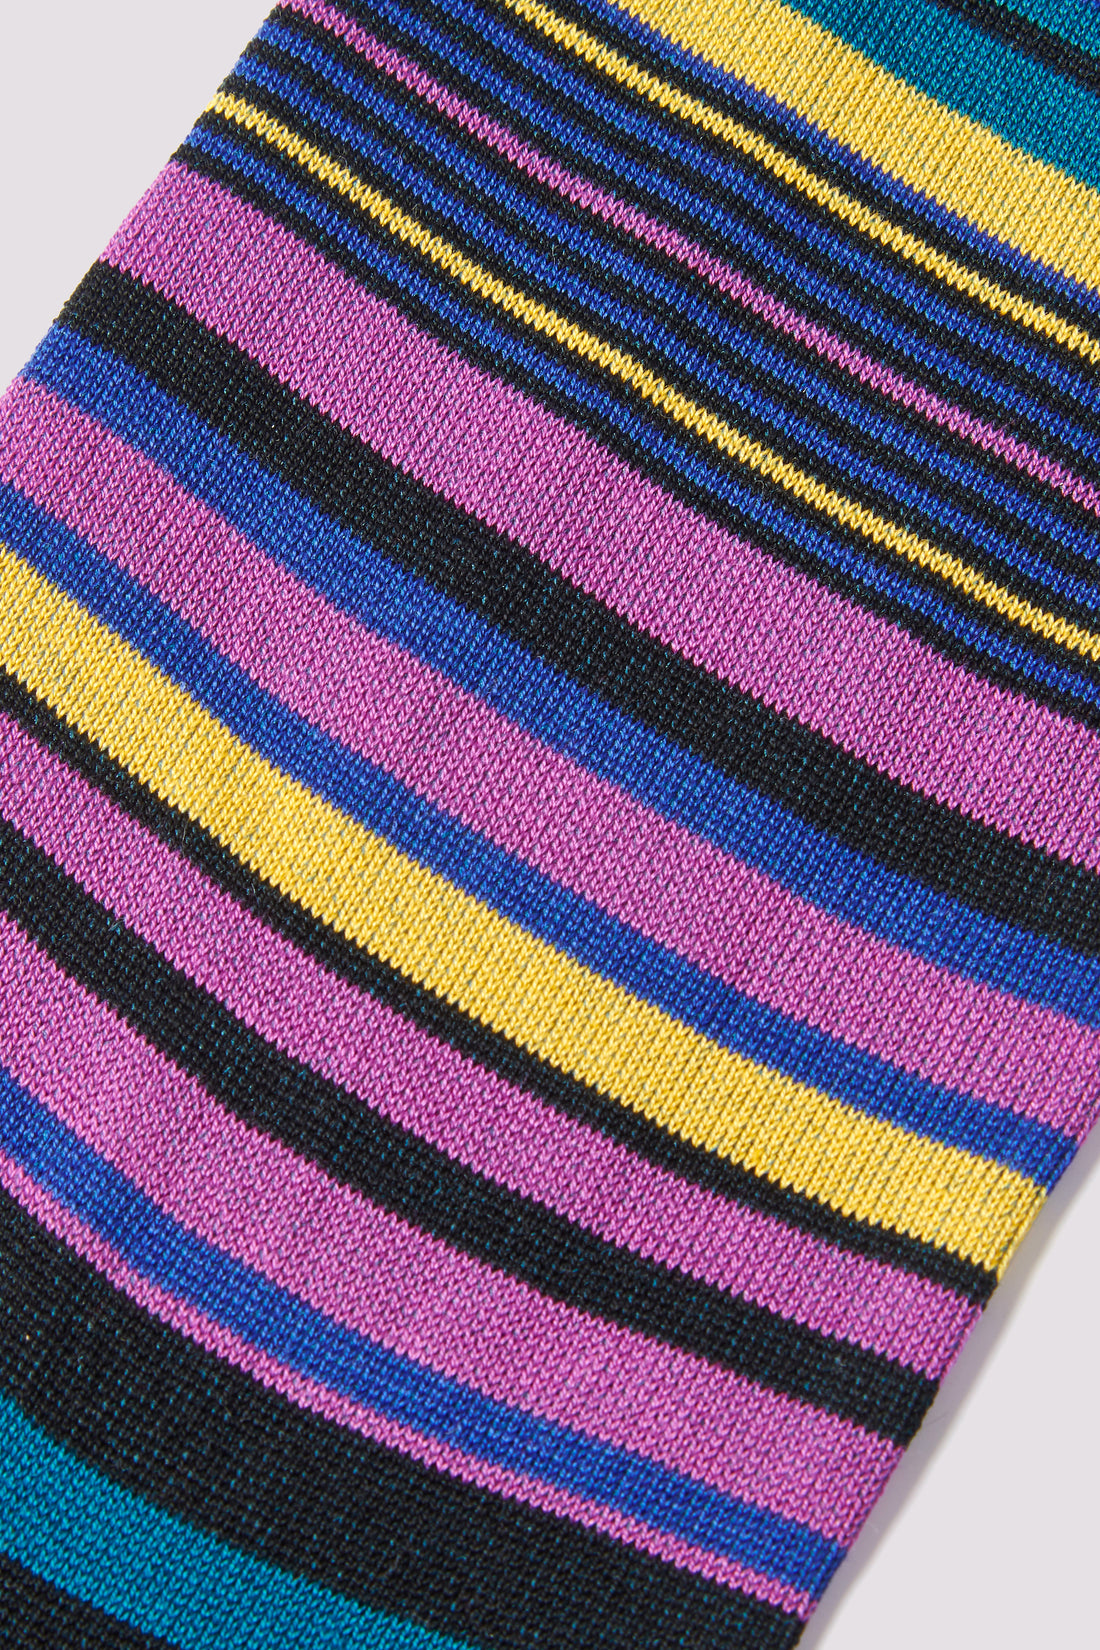 Multi-Stripe Socks in Teal